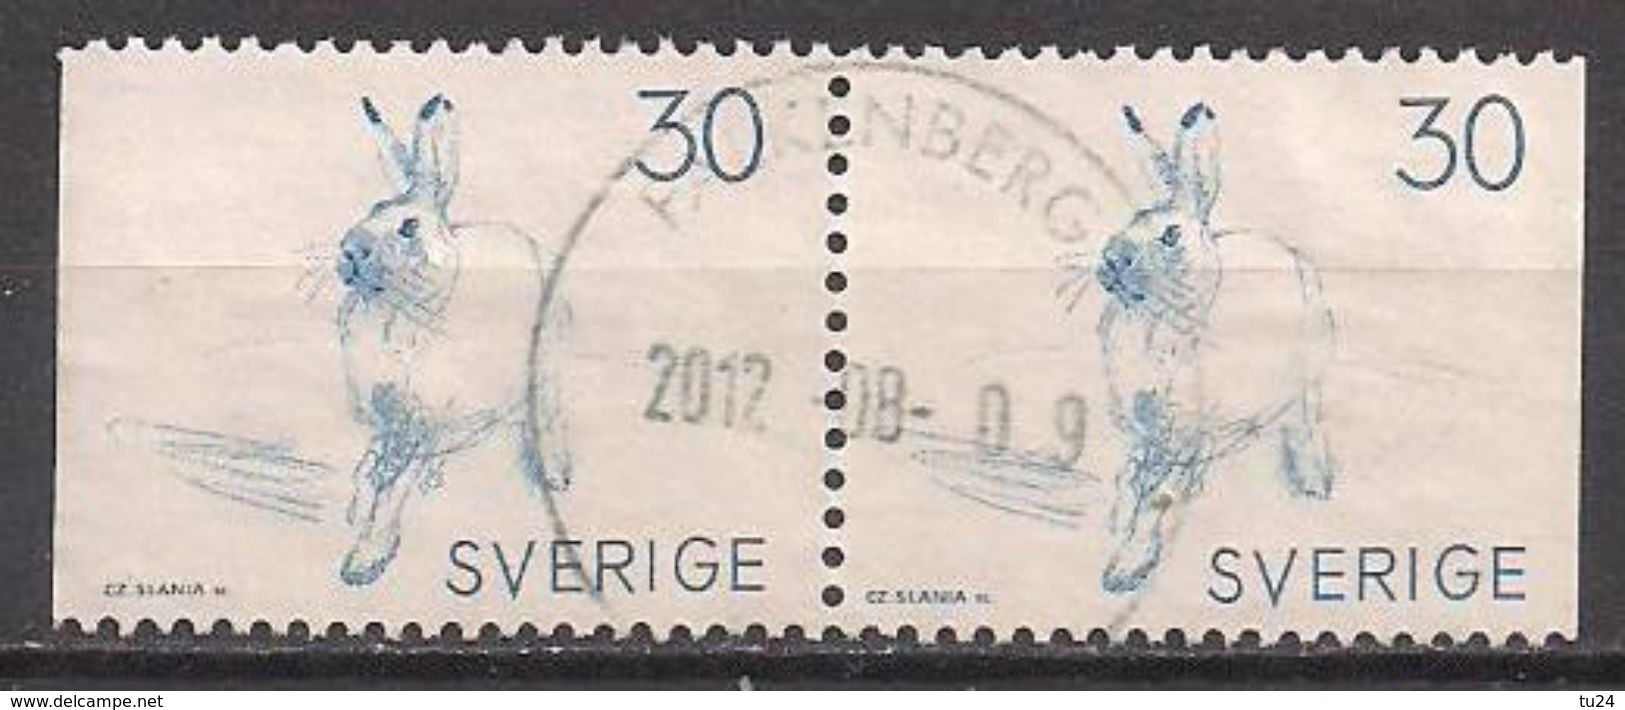 Schweden  (1968)  Mi.Nr.  621  Gest. / Used  (5et22) - Gebraucht